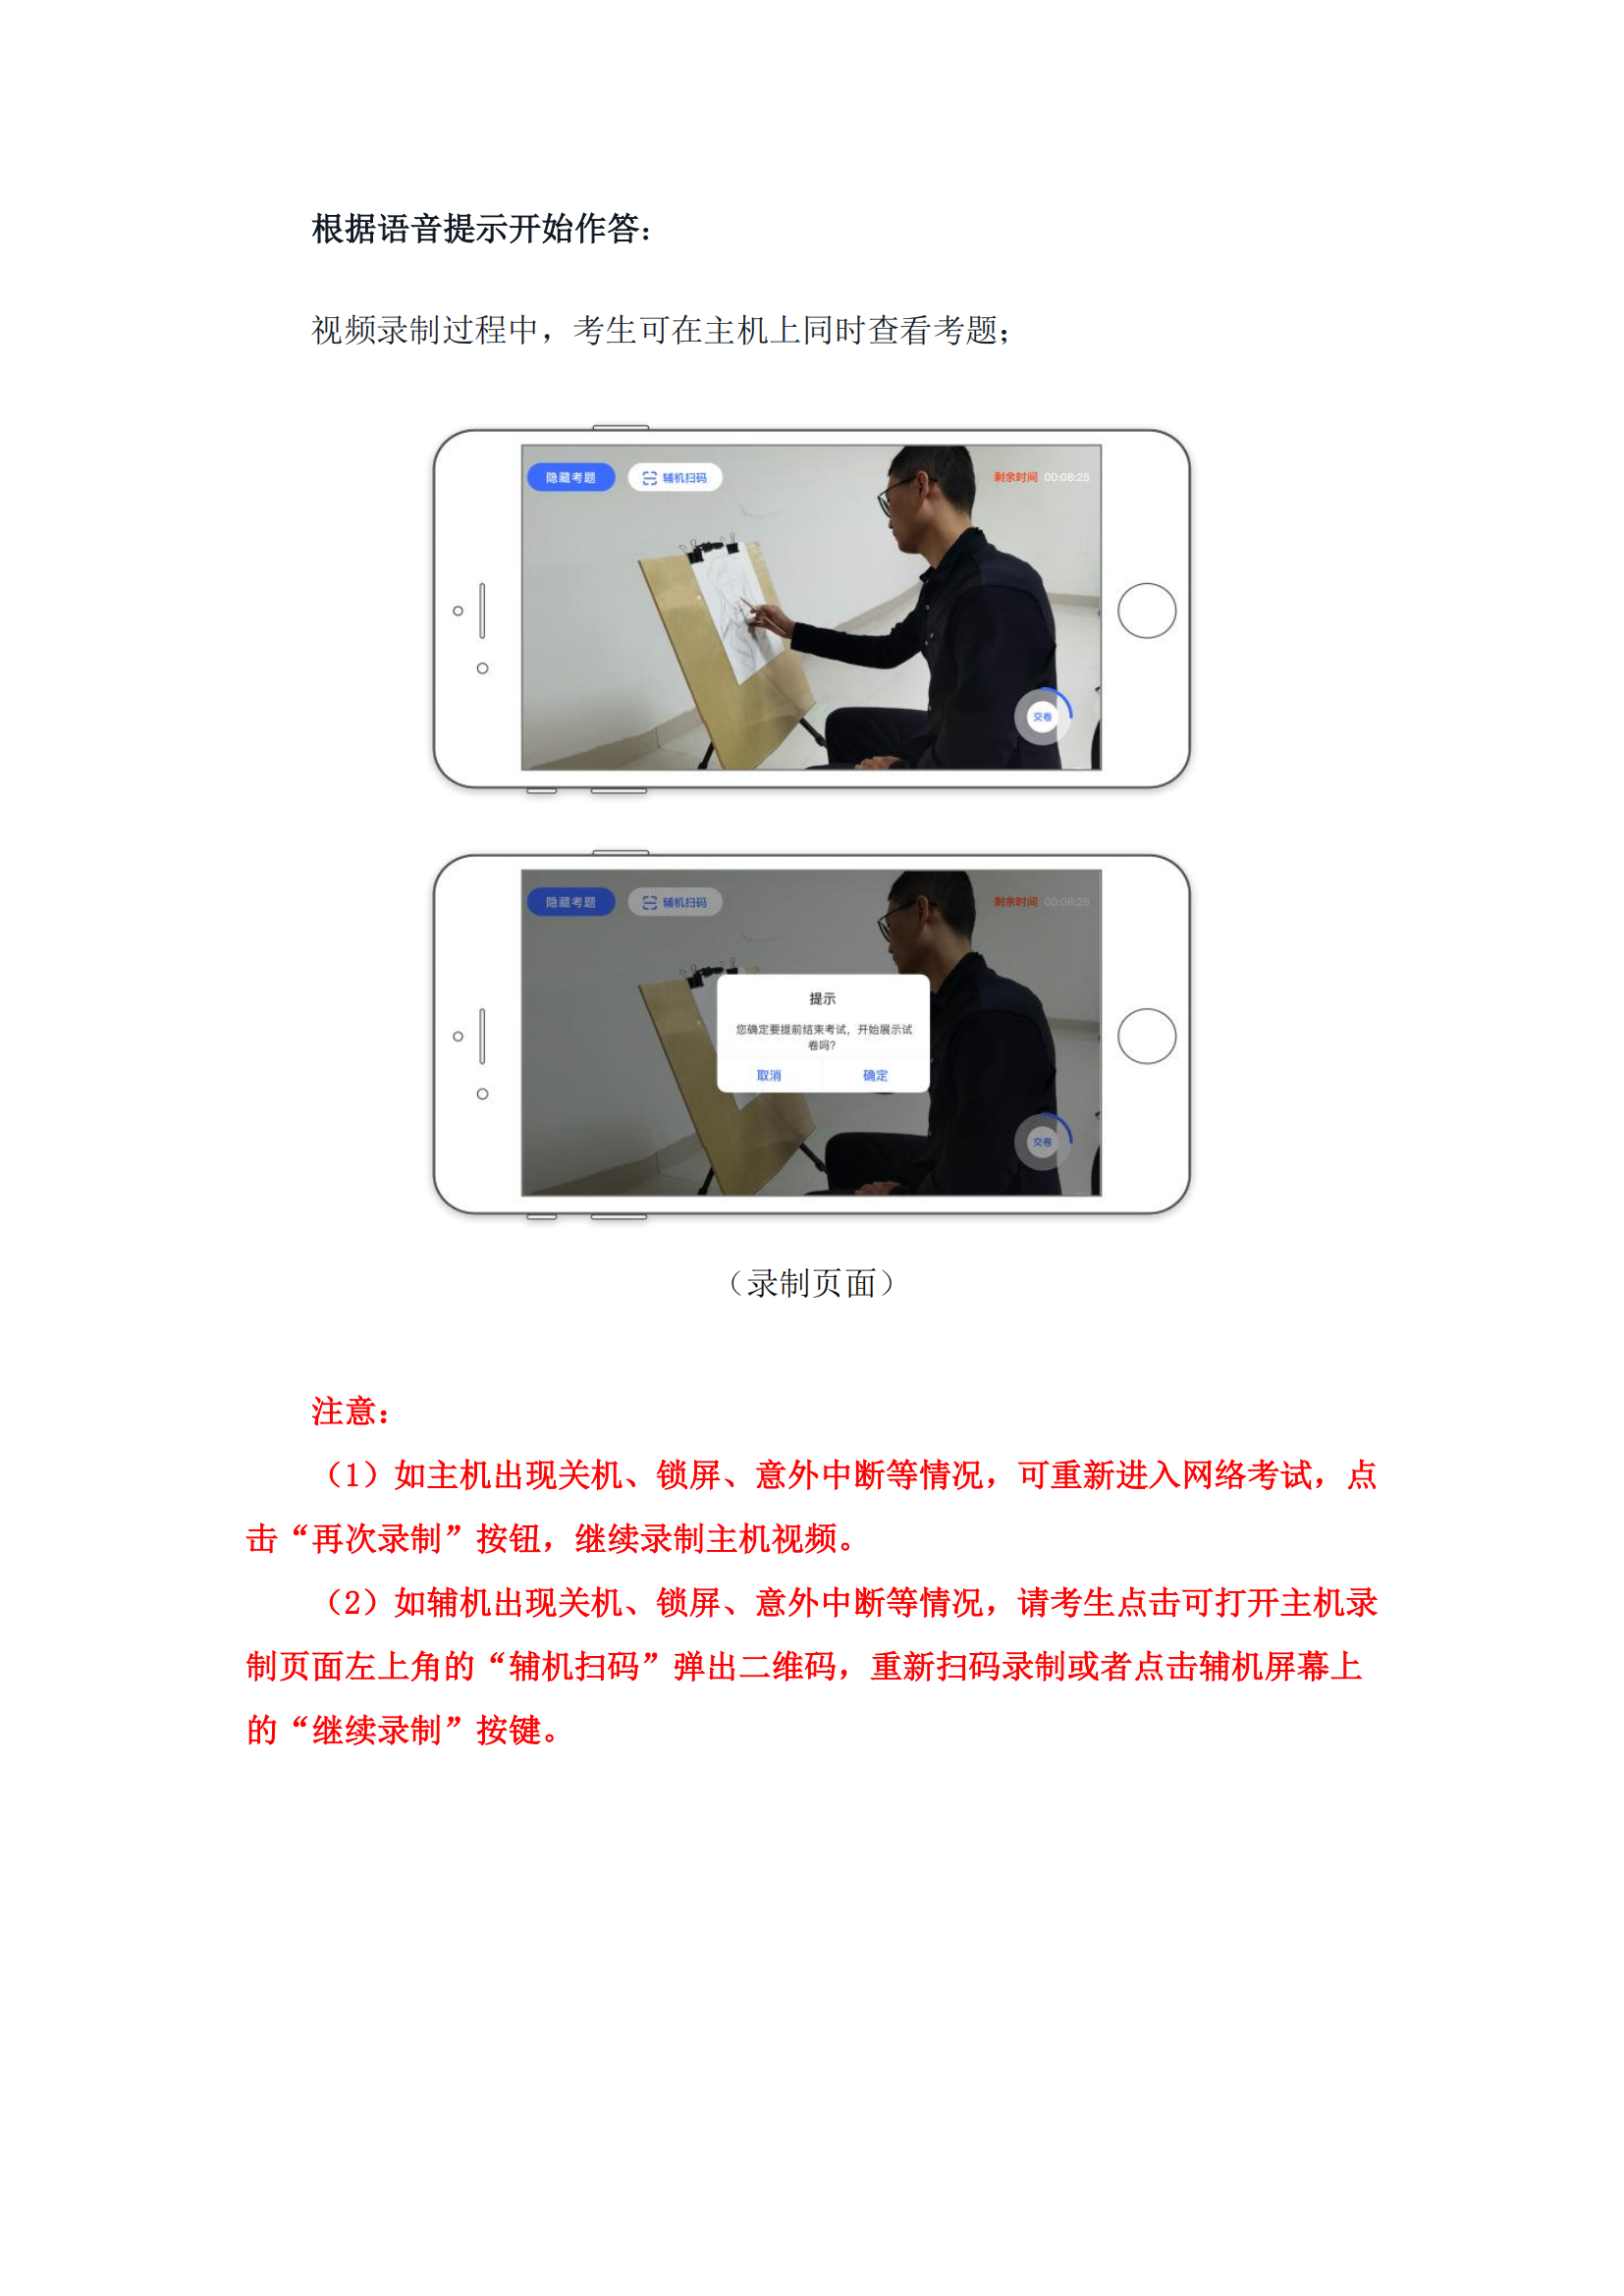 附件1：广州美术学院艺术升APP网络考试操作说明_08.png